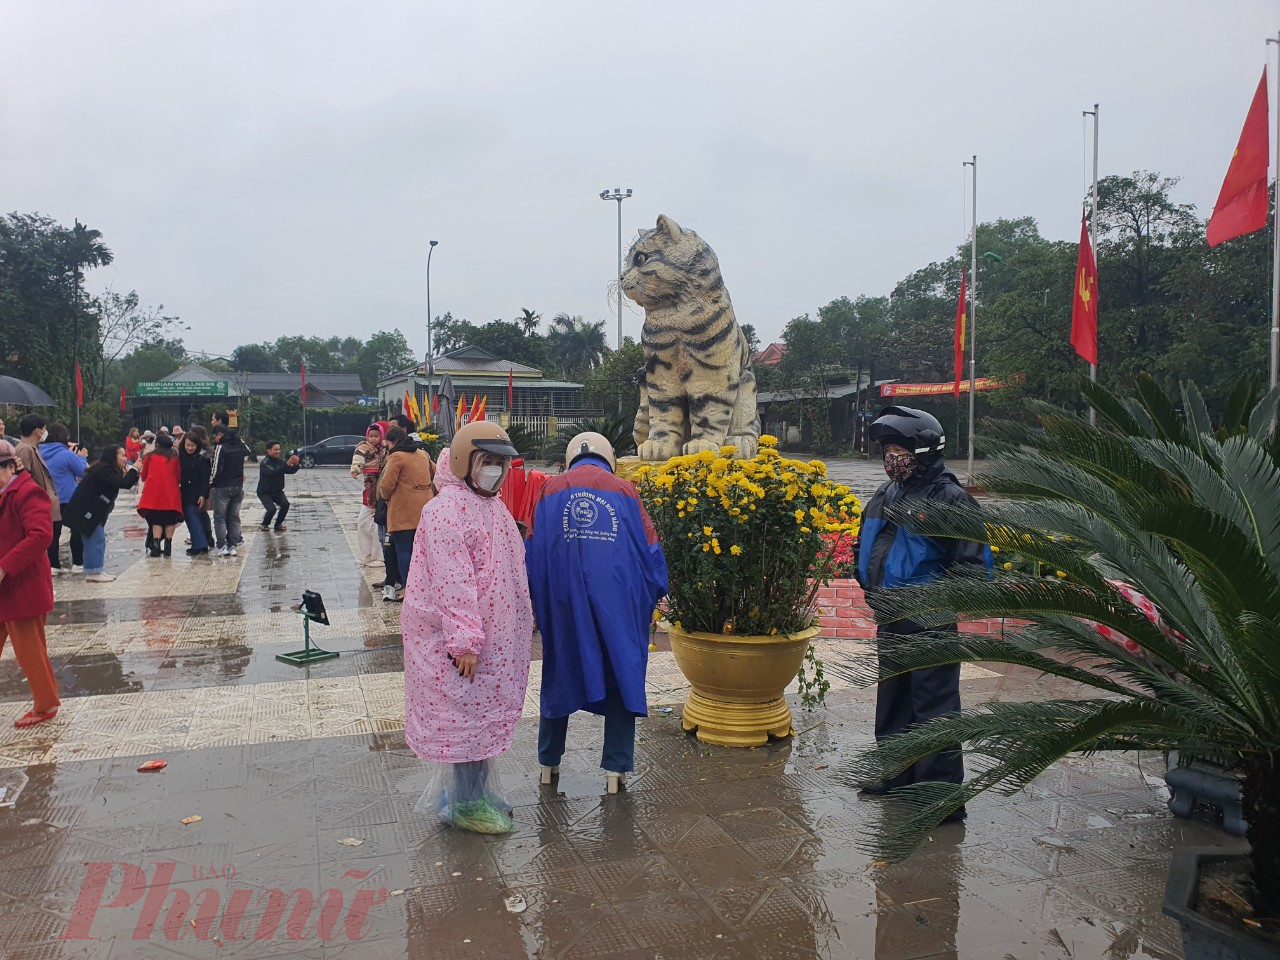 Gia đình ông Nguyễn Văn Nam ở Quảng Bình chạy vào Đà Nẵng, dù mưa lạnh vẫn tranh thủ ghé chụp hình cùng chú mèo đáng yêu. Ông rất ngưỡng mộ tài năng nghệ nhân đã tạo ra chú mèo và tấm tắc khen tượng mèo như thật